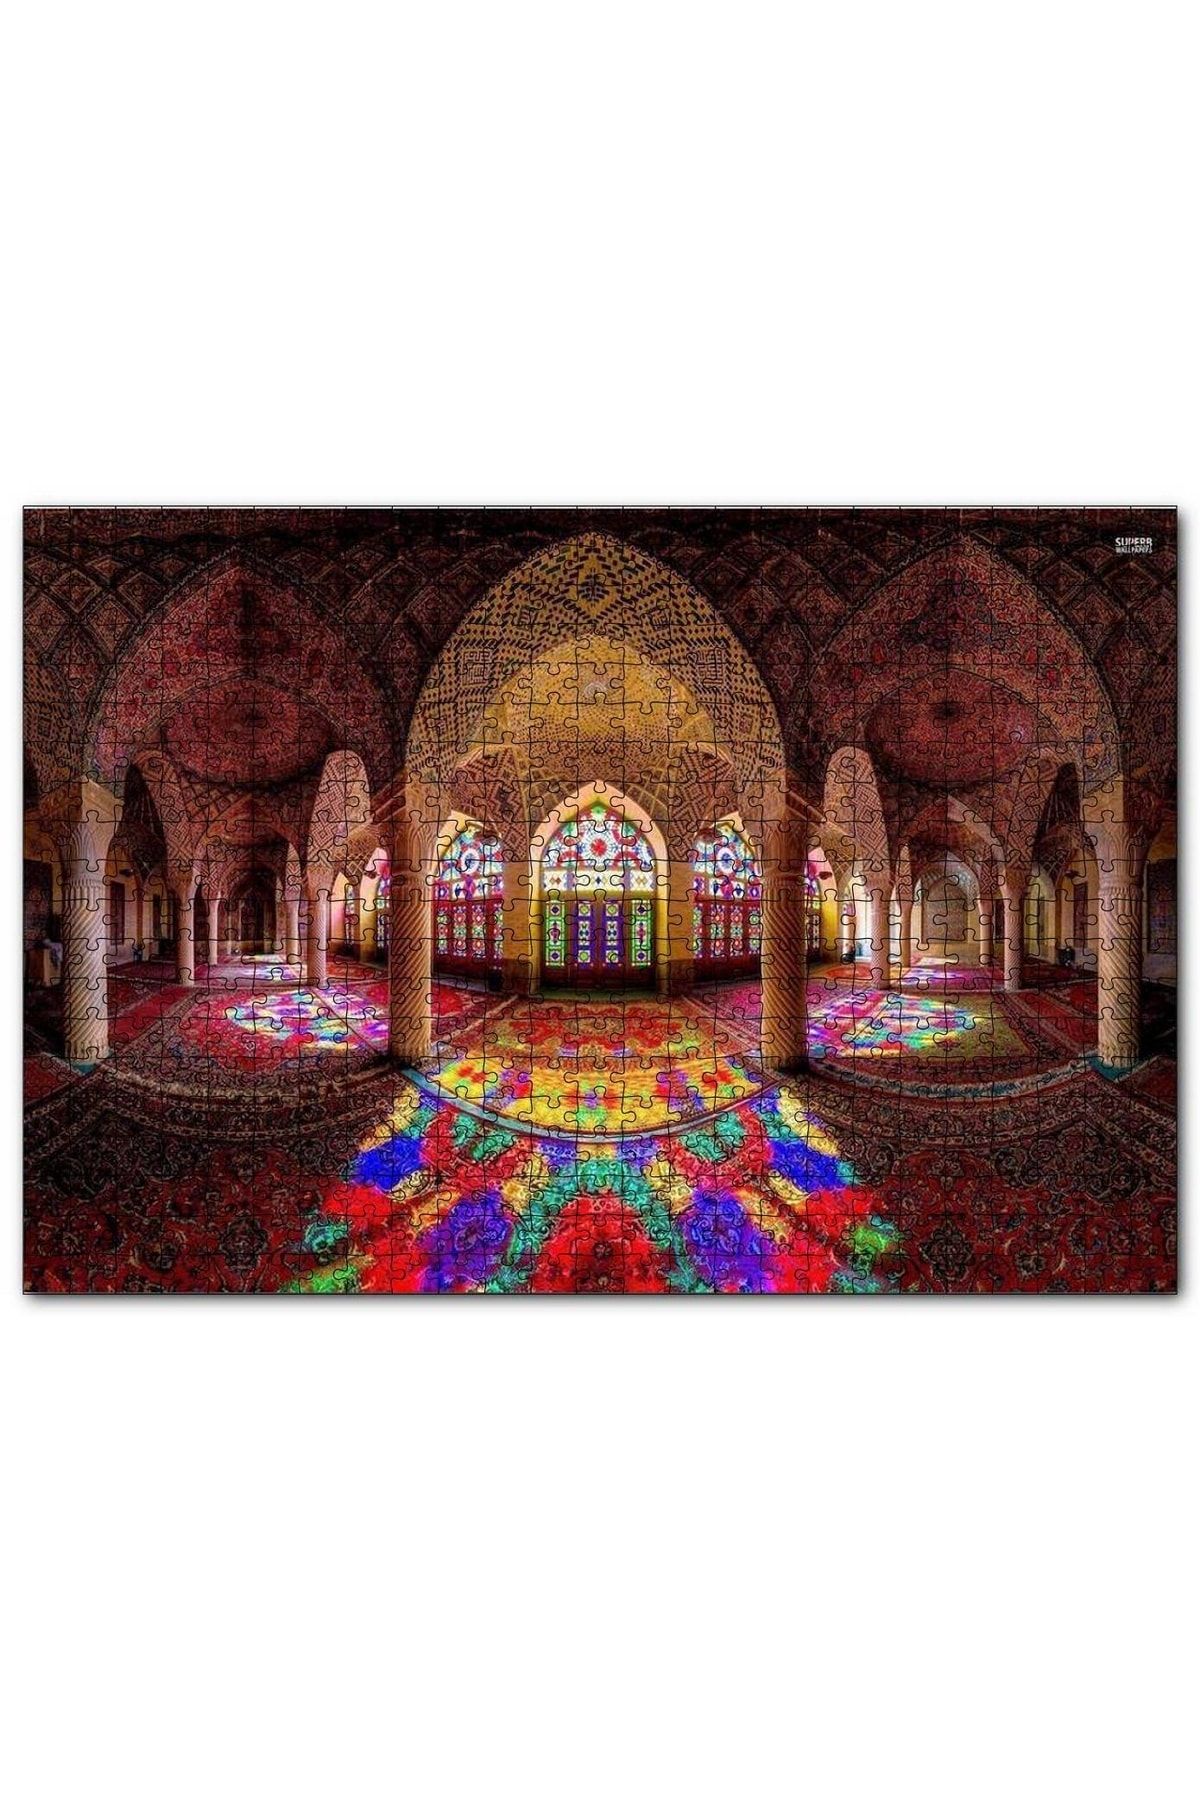 Cakapuzzle Iran'da Vitraylar Ve Tavan Süslemeleri 1000 Parça Puzzle Yapboz Mdf (ahşap)